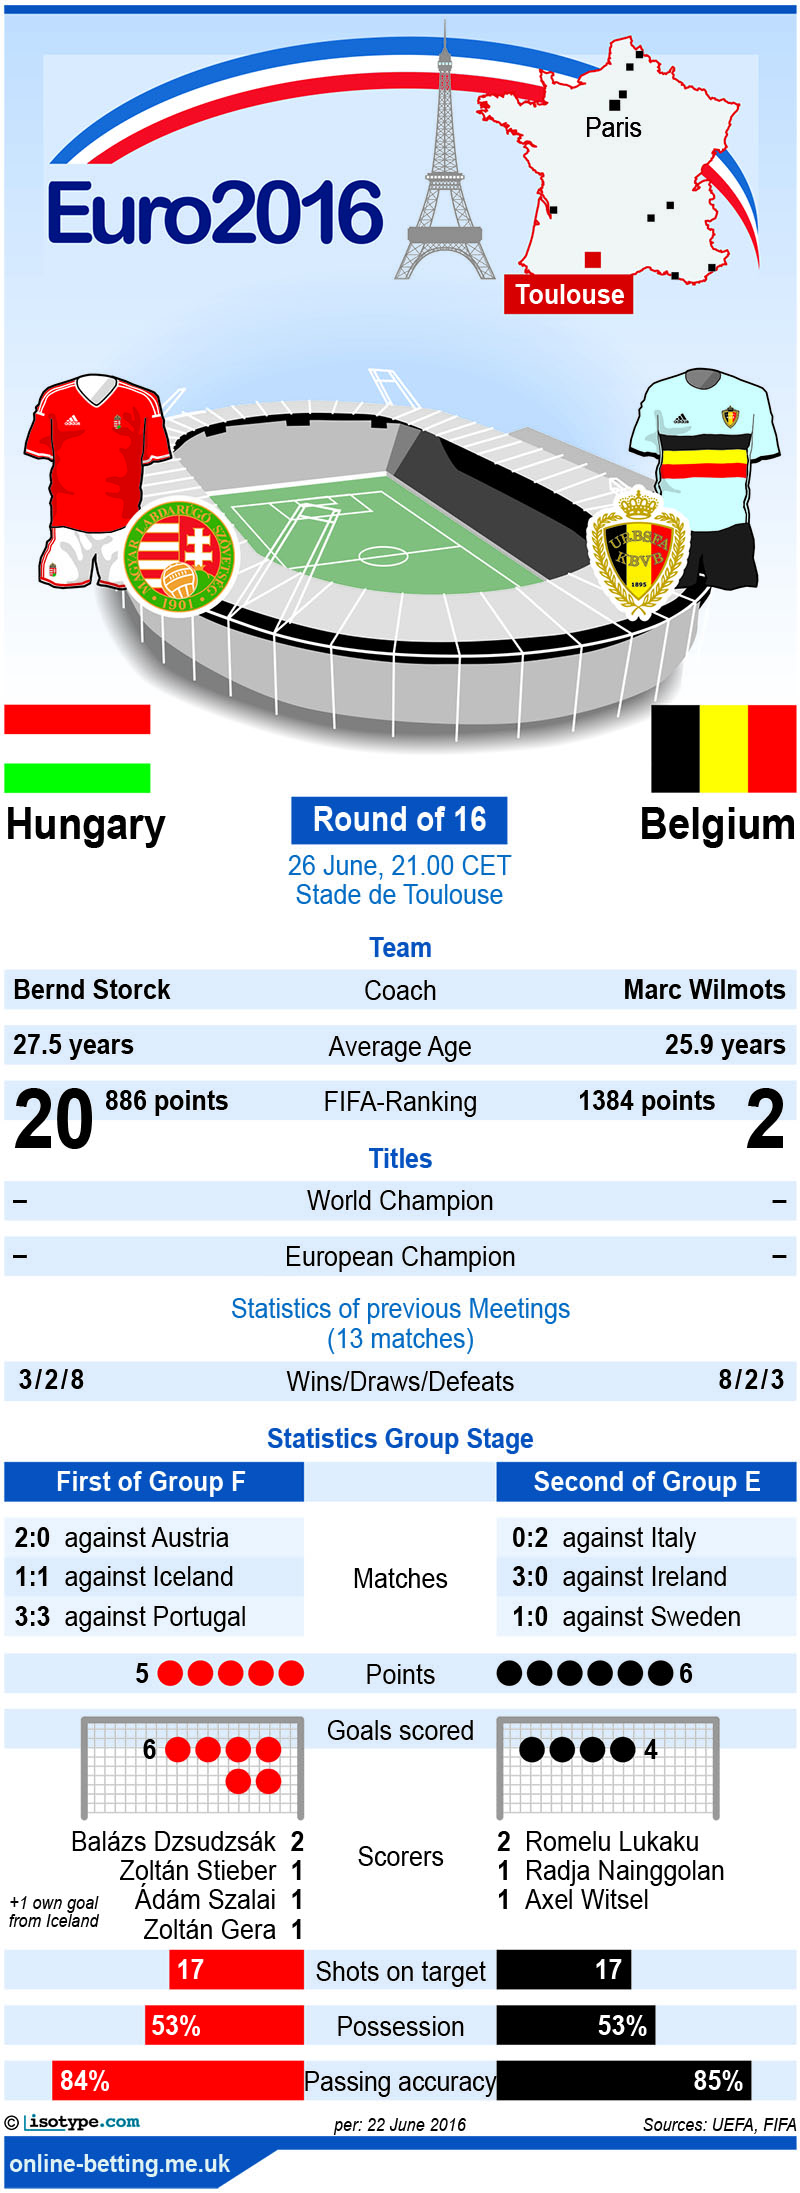 Hungary v Belgium Euro 2016 Infographic